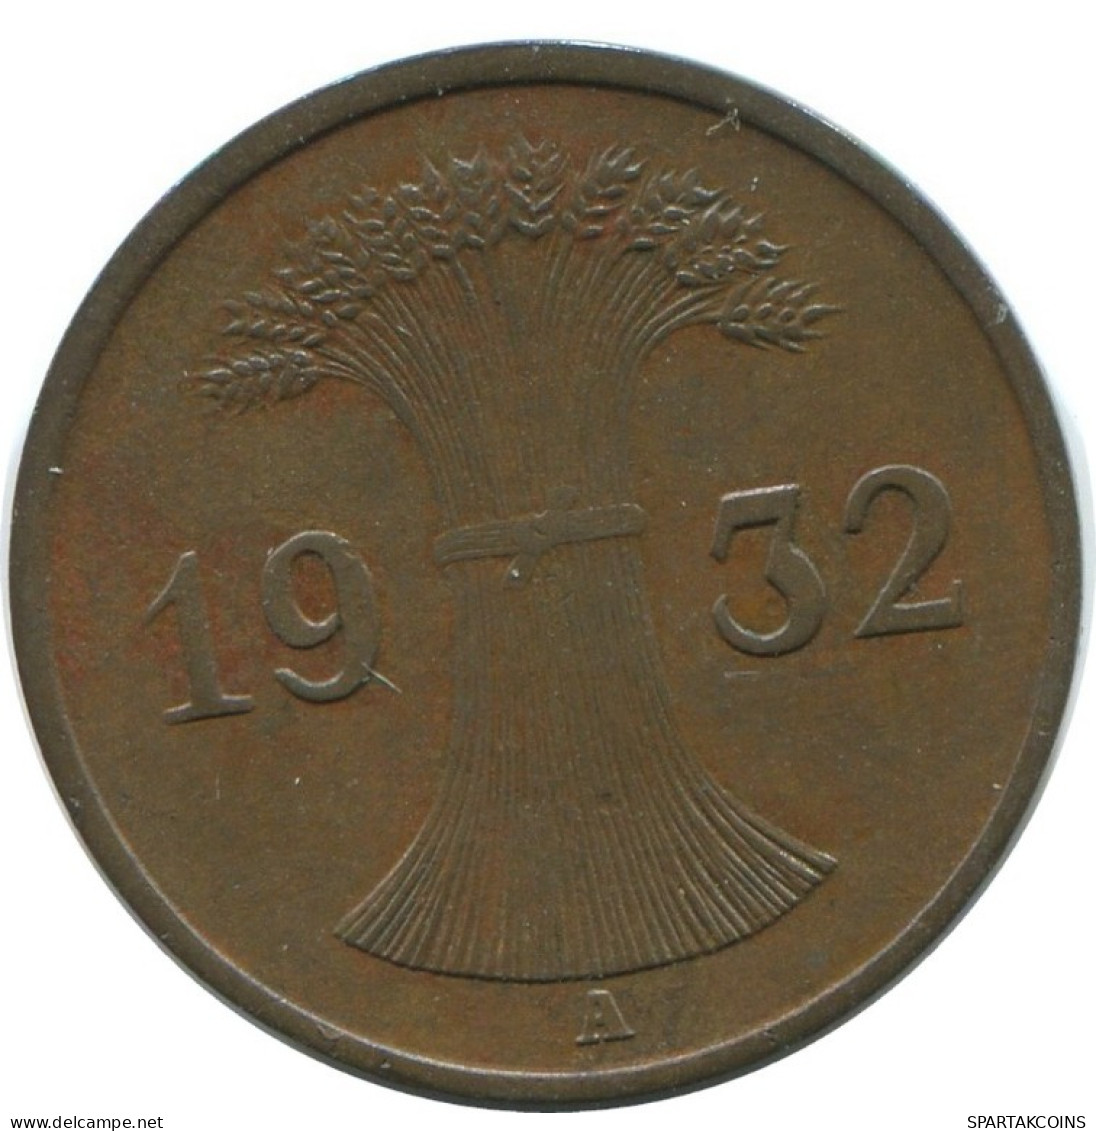 1 REICHSPFENNIG 1932 A DEUTSCHLAND Münze GERMANY #AE223.D.A - 1 Rentenpfennig & 1 Reichspfennig